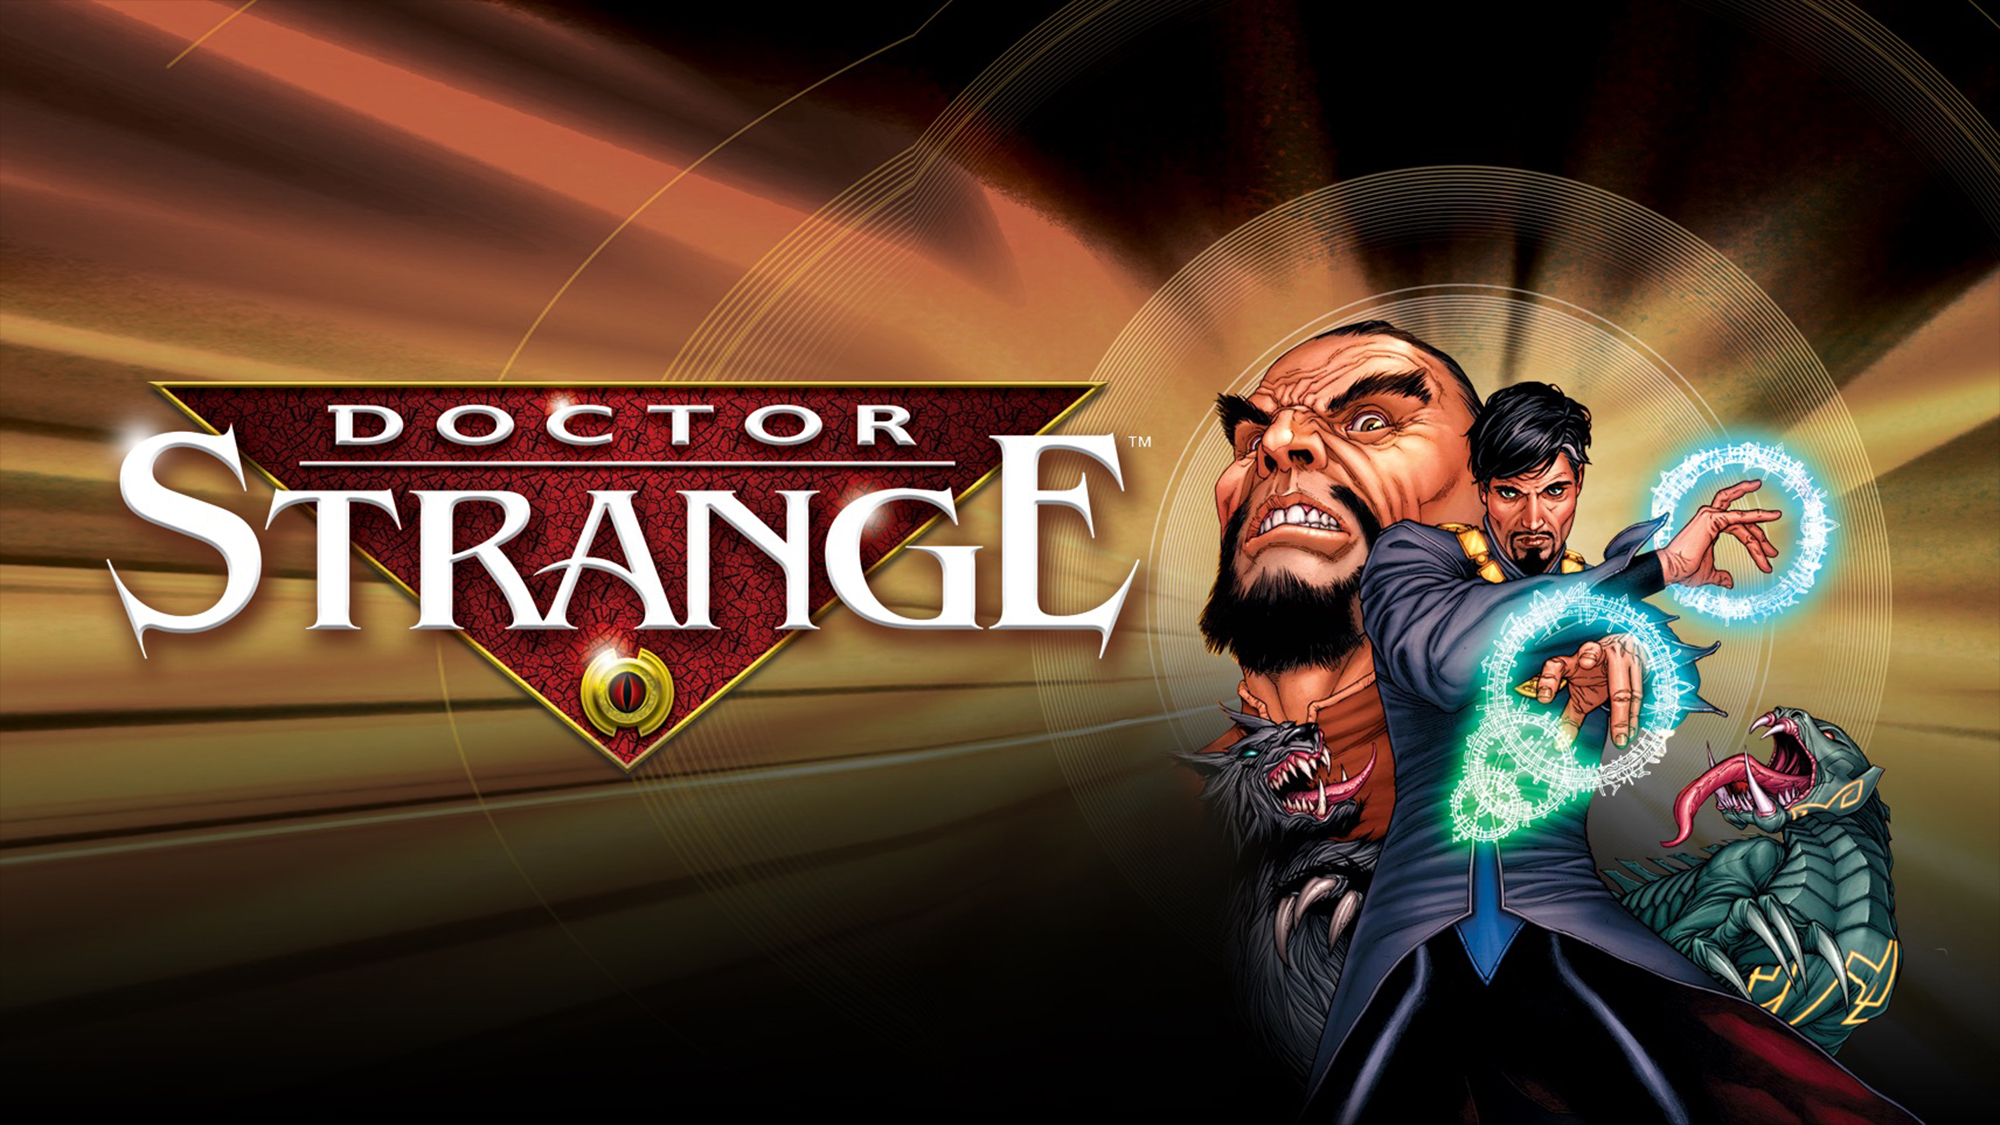 Doctor Strange: The Sorcerer Supreme HD Wallpaper